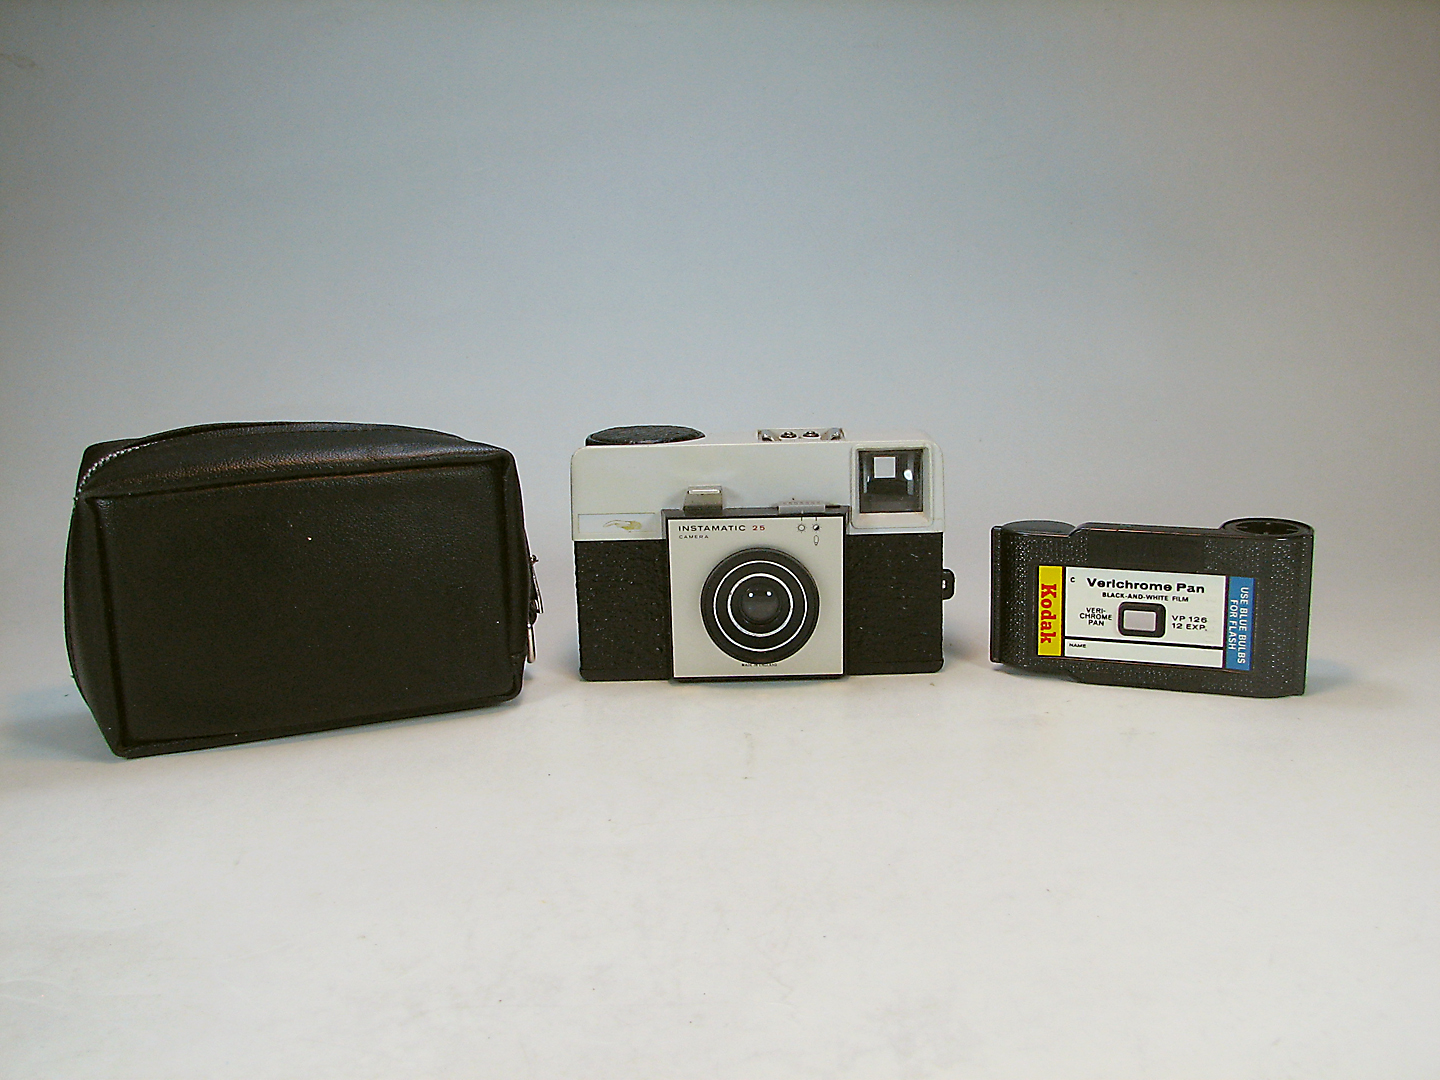 دوربین کلکسیونی کداک Kodak Instamatic 25